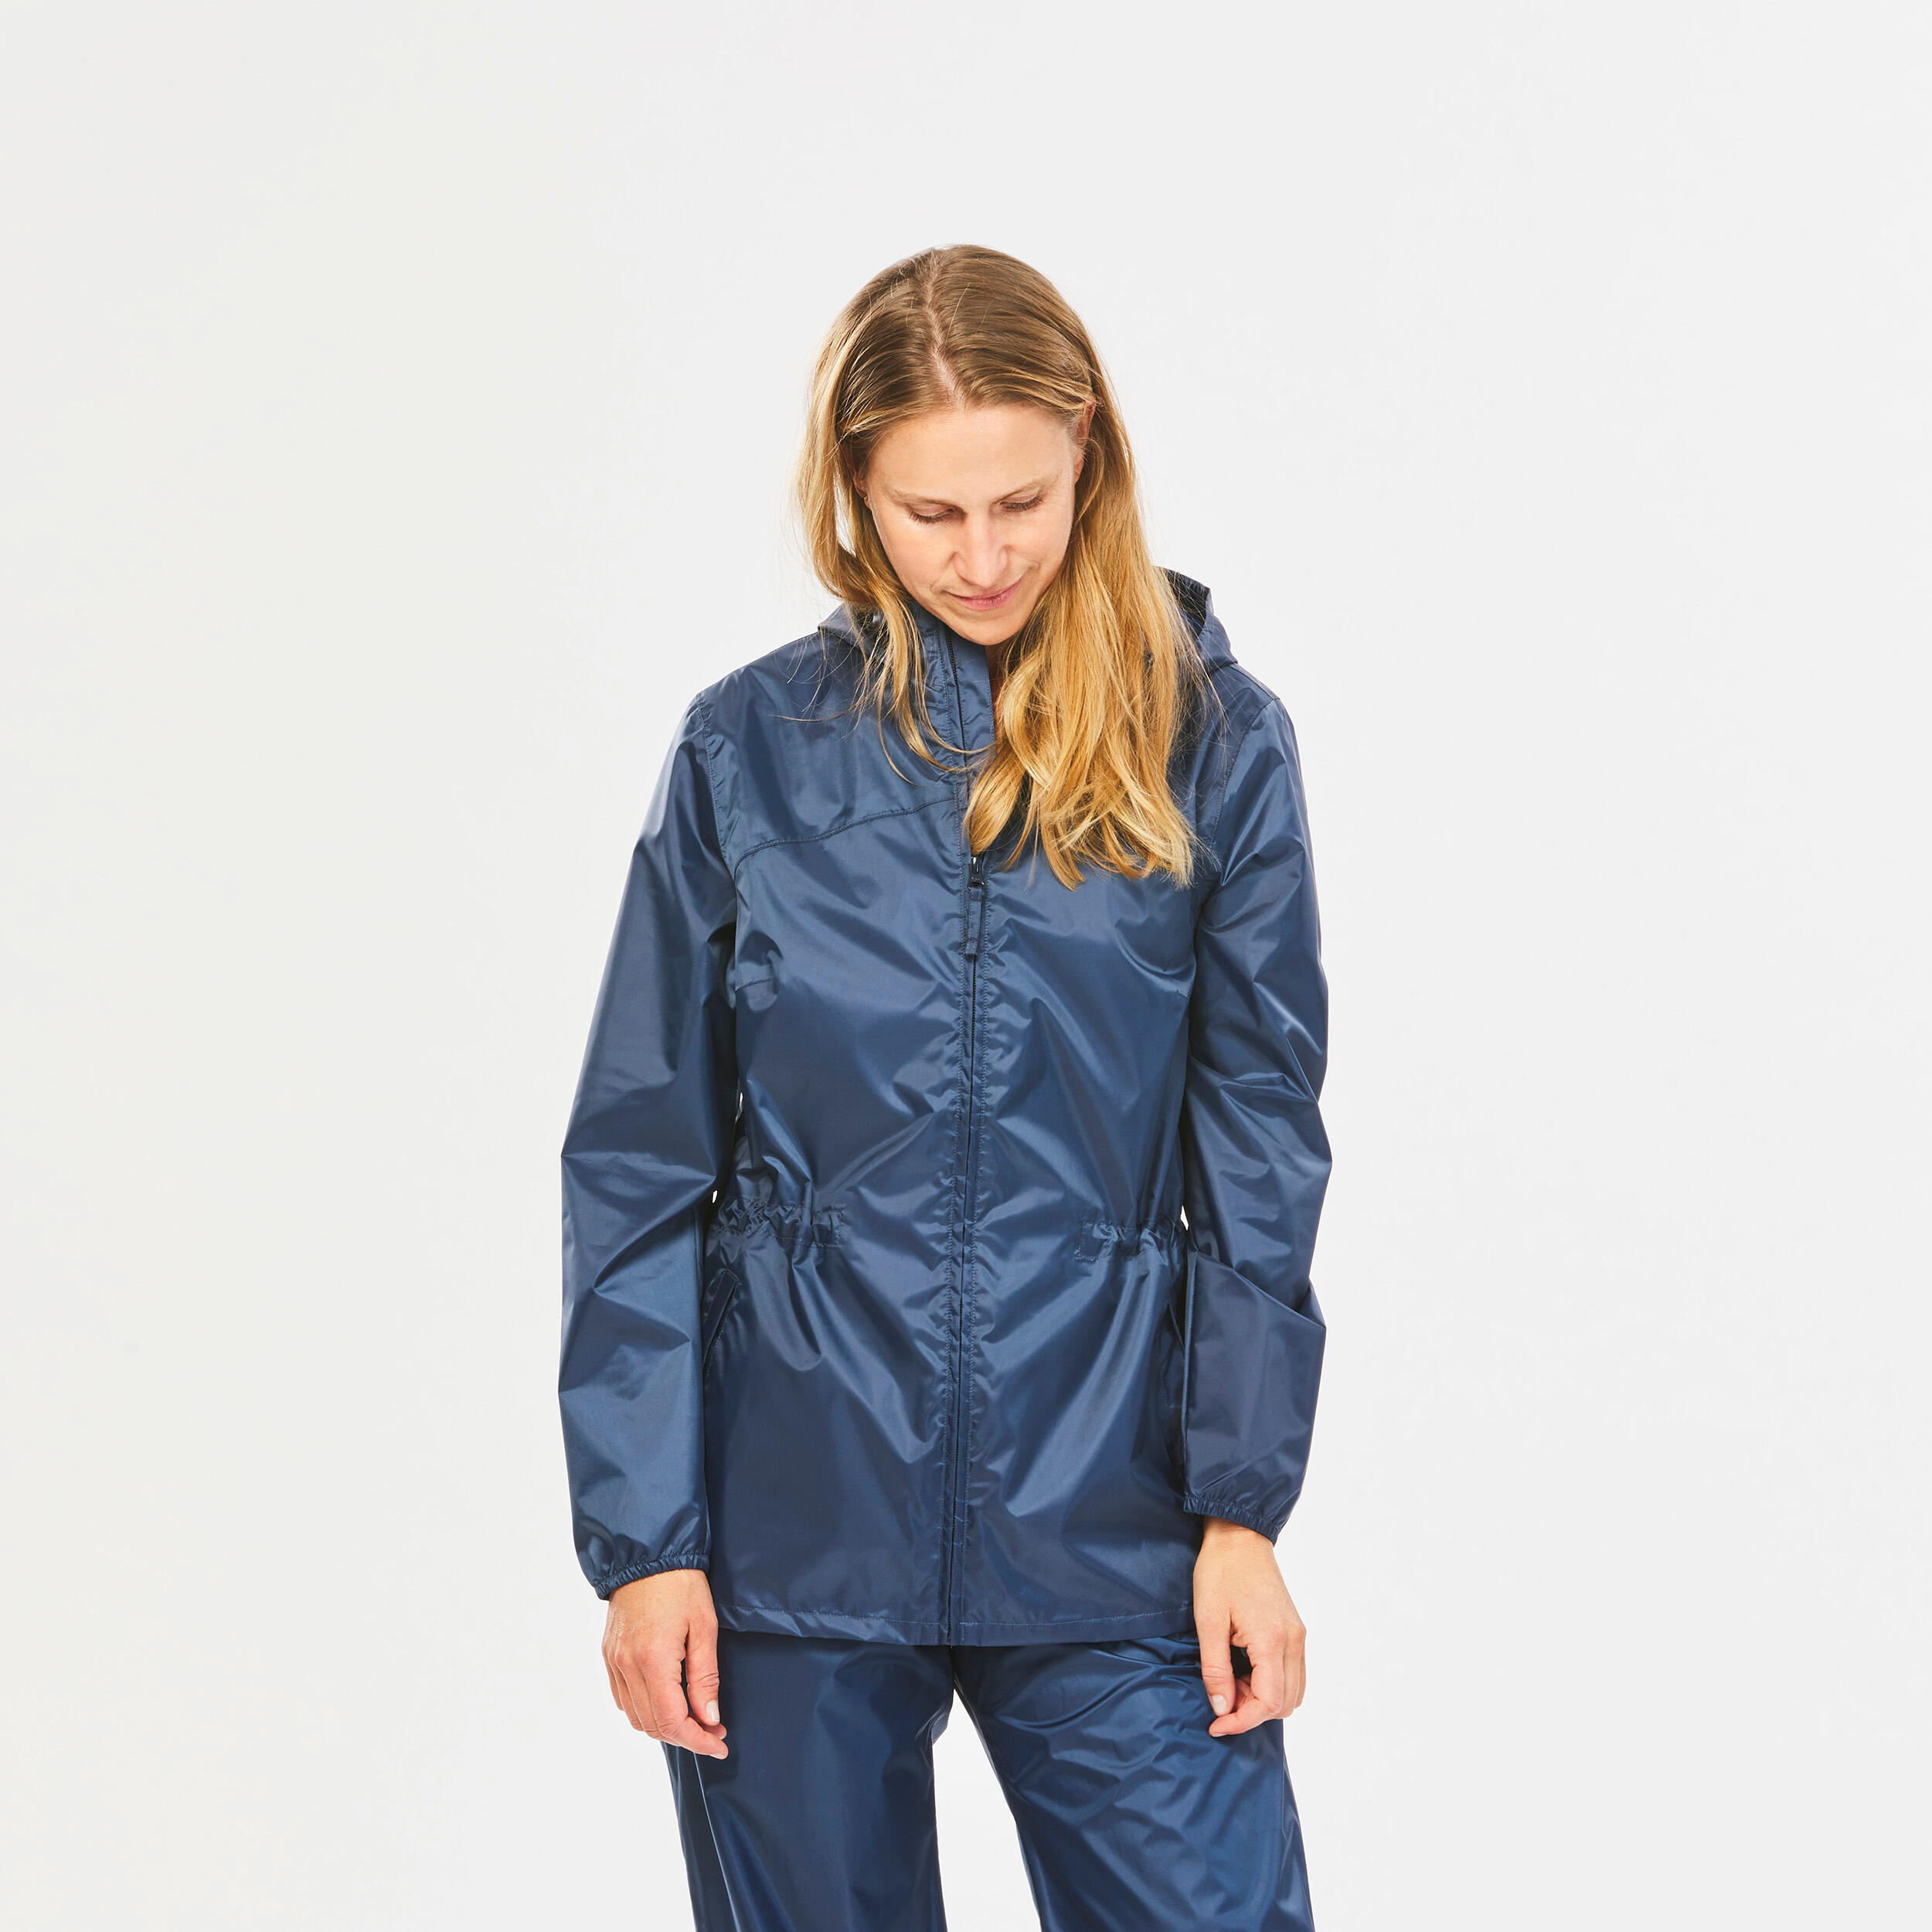 Women's Windproof and Water-repellent Hiking Jacket - Raincut Full Zip 4/8